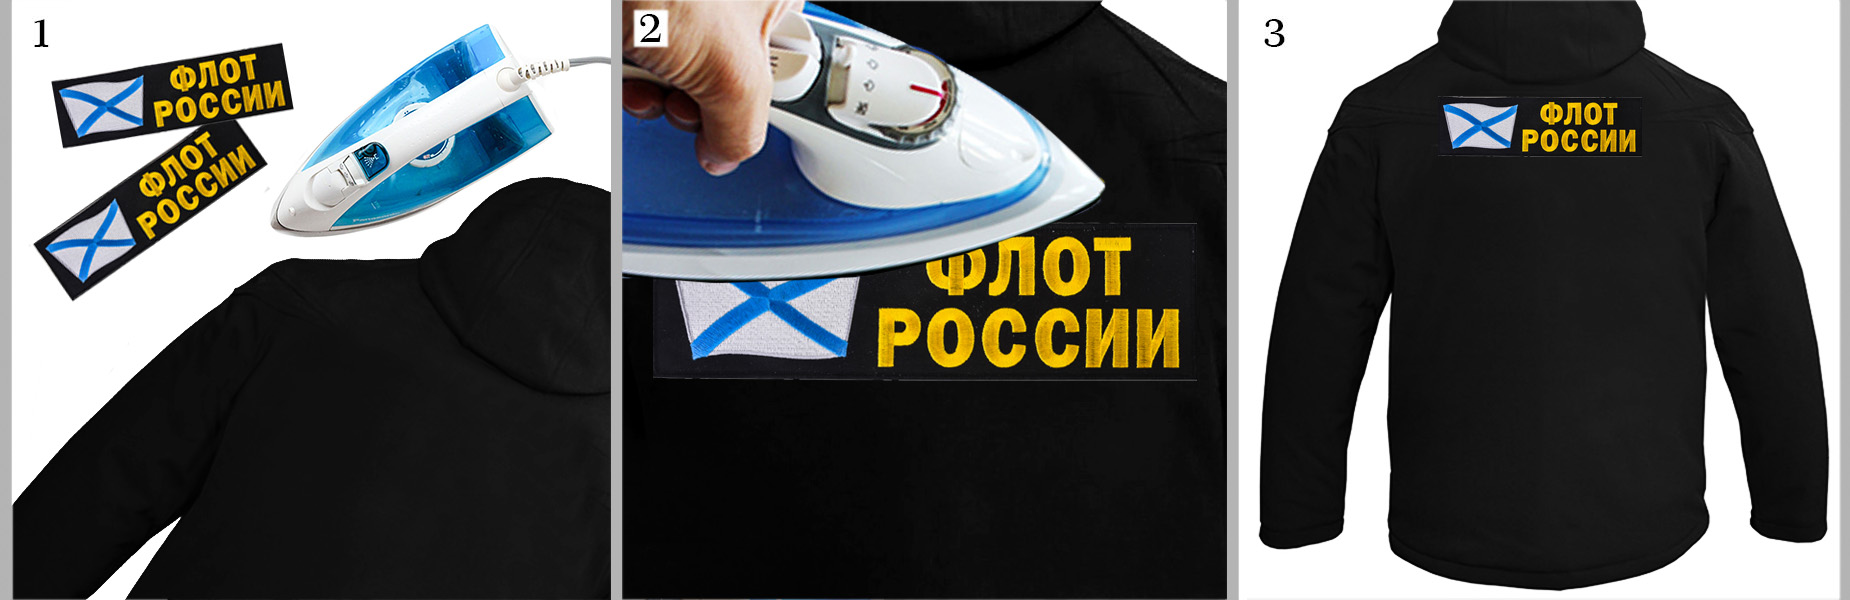 Термоклеевая нашивка "Флот России" на куртках